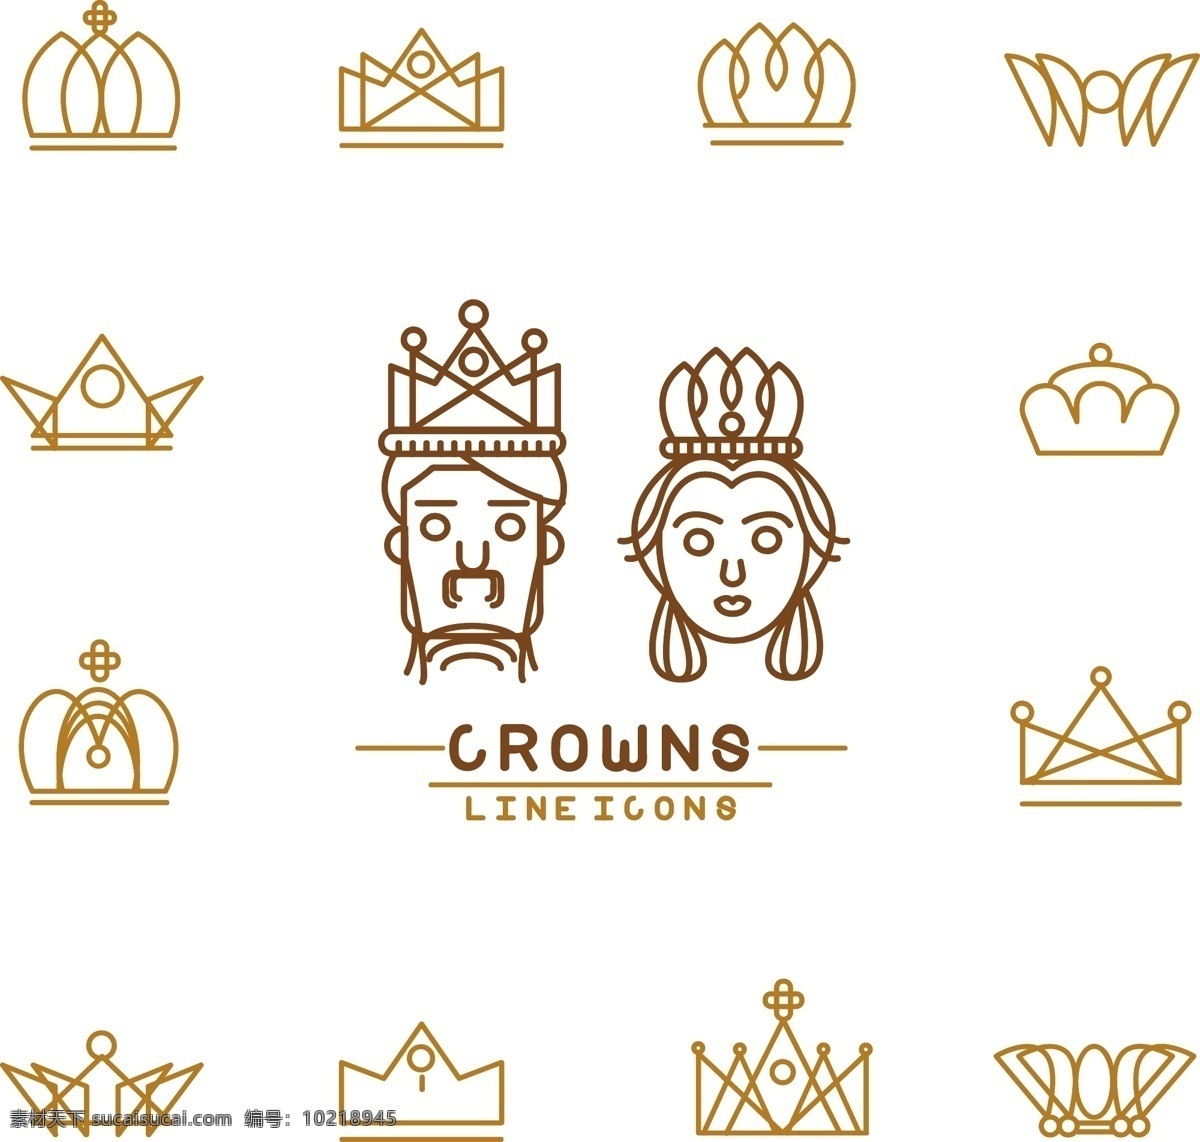 皇冠 标志 大全 矢量图 国王 欧式皇冠 尊贵 皇冠标志大全 王者象征